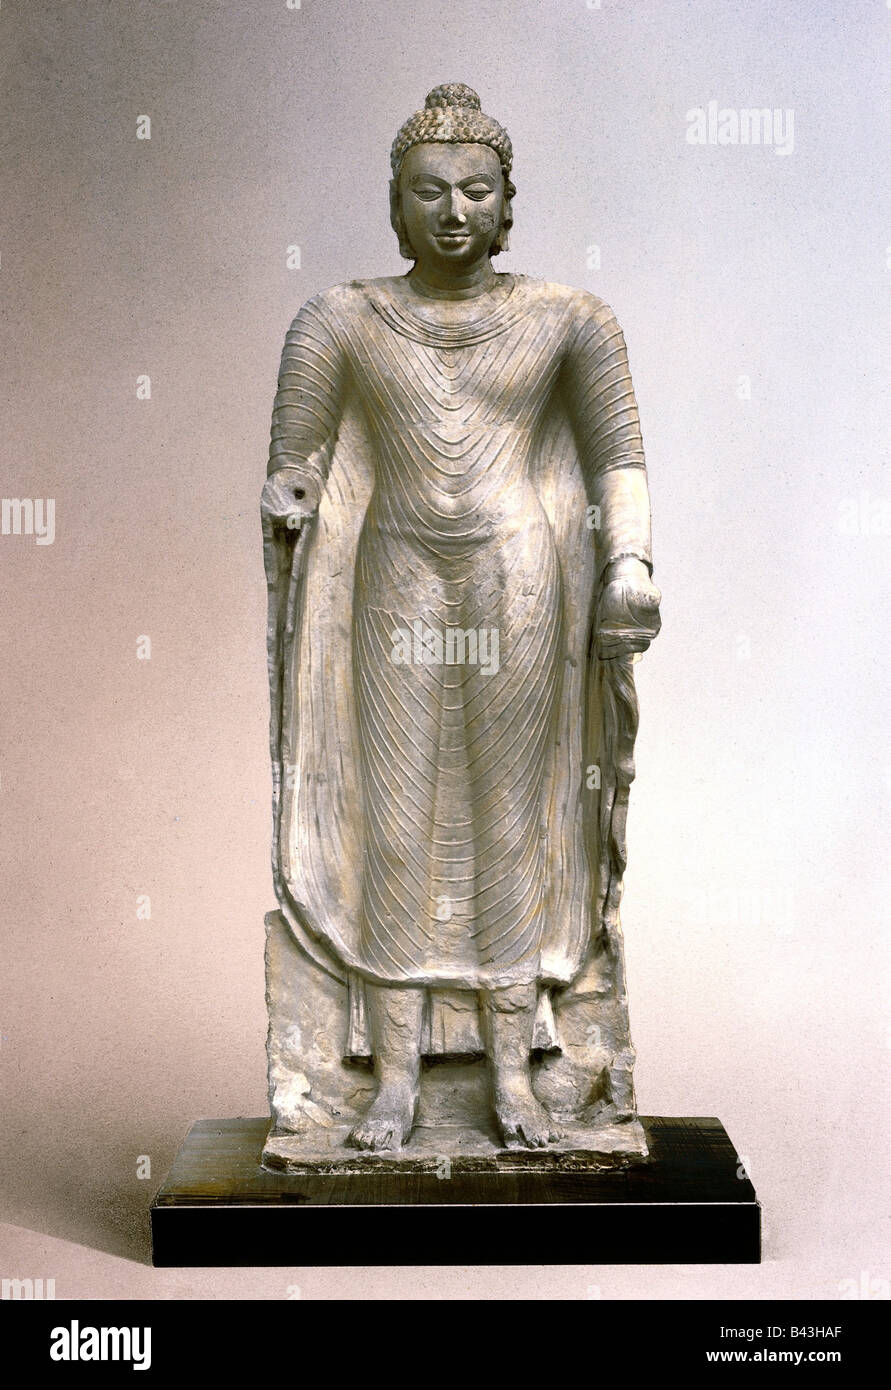 Bouddha, prince Siddharta Gautama, 557 - 447 BC, fondateur indien du bouddhisme, statue, Bouddha debout, période Gupta (4ème - 6ème siècle AD), vers 5ème siècle, , Banque D'Images